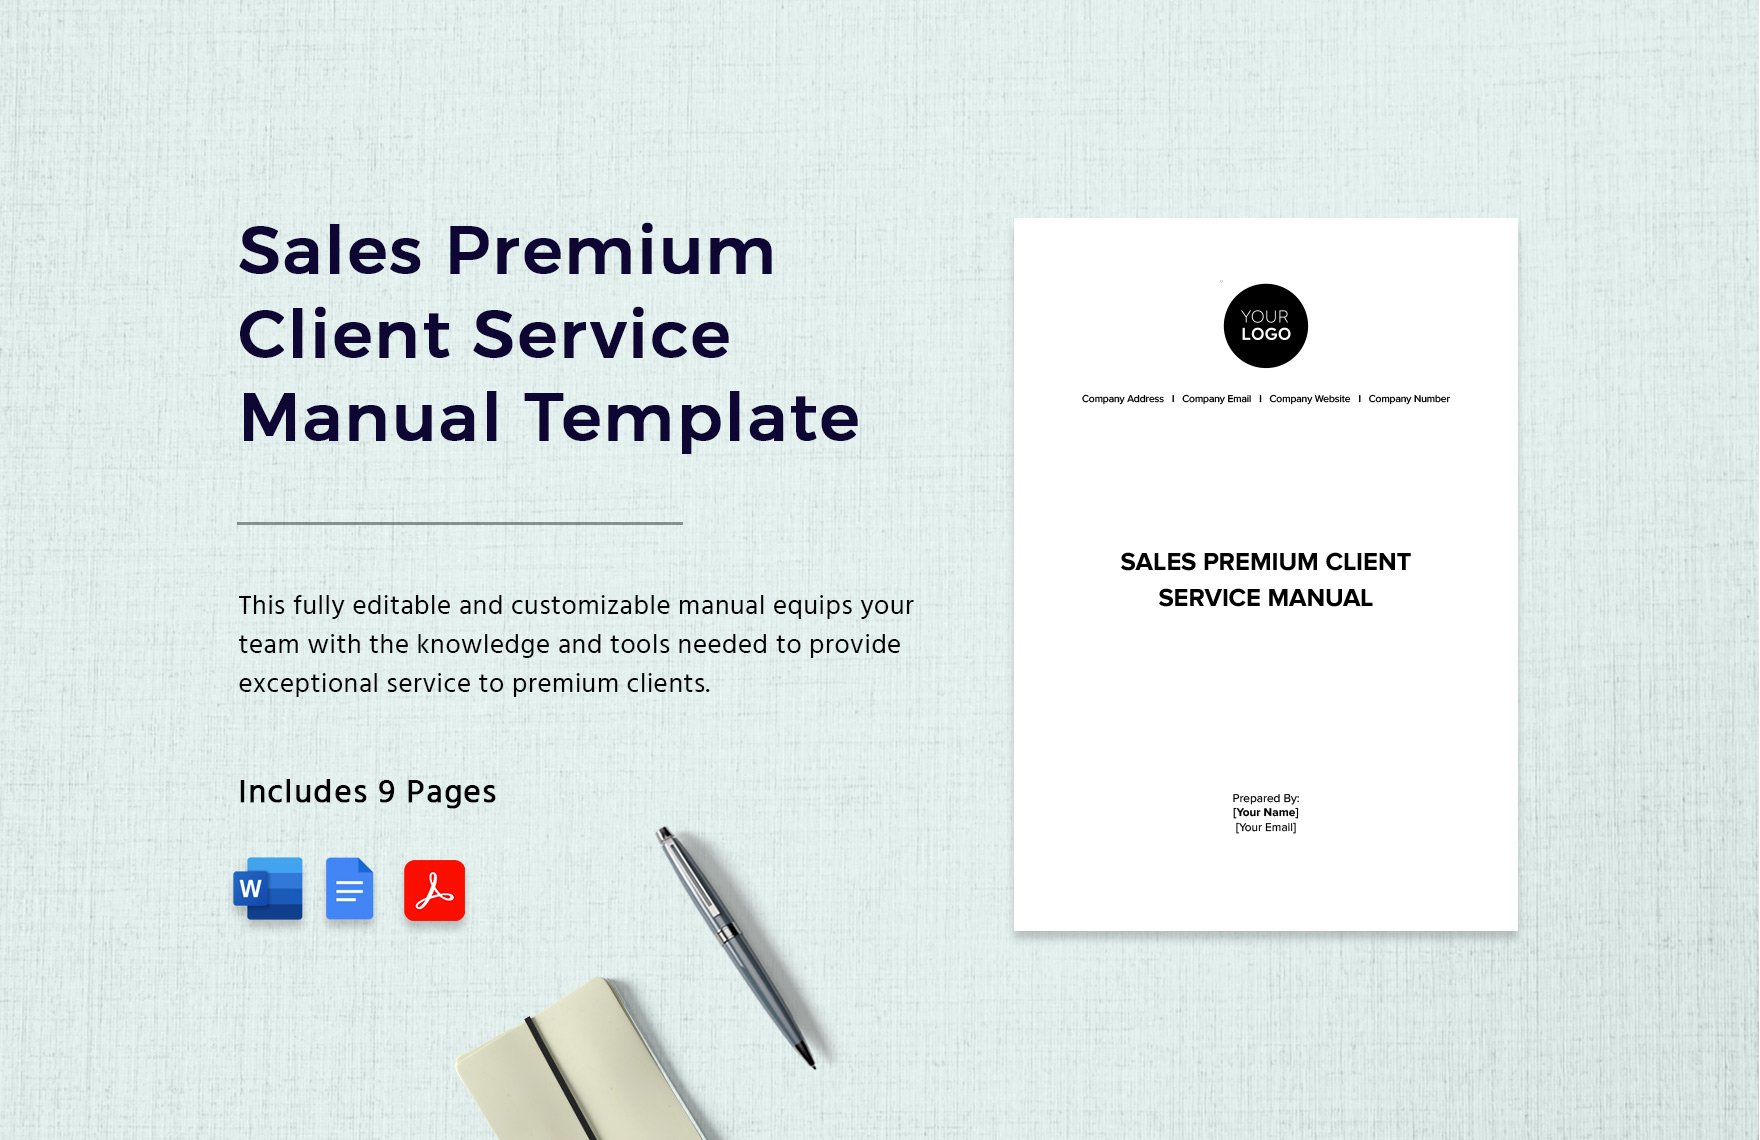 Sales Premium Client Service Manual Template